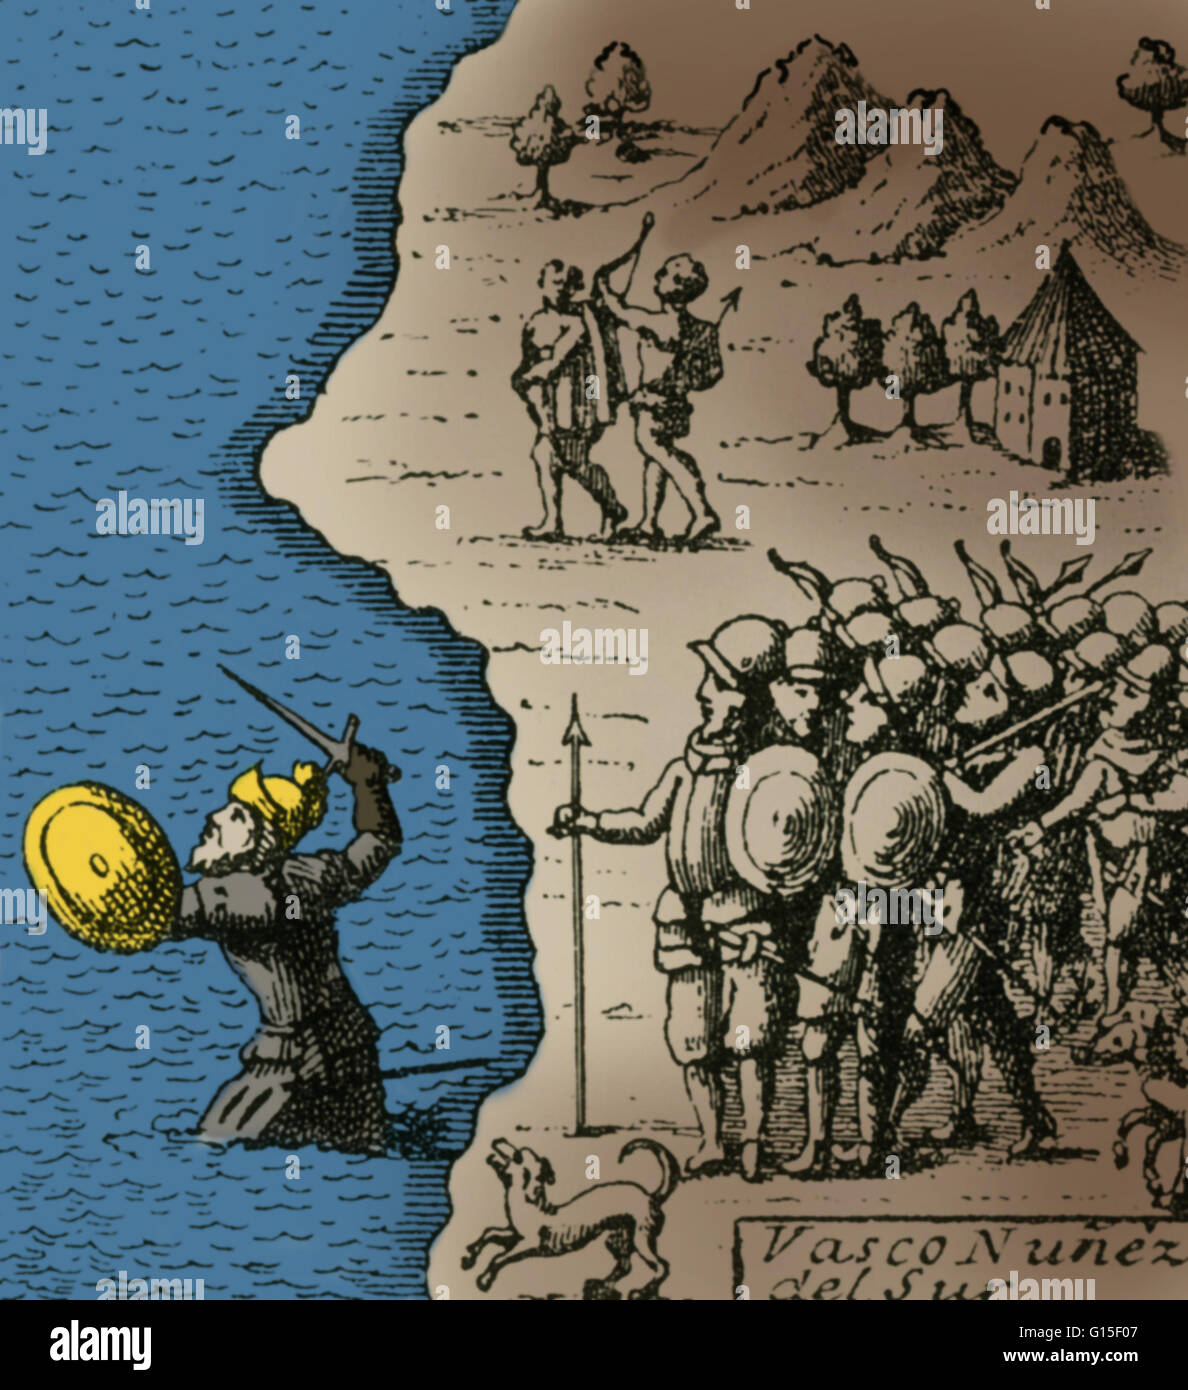 Vasco Núñez de Balboa (1474 - 15 gennaio 1519) era un esploratore spagnolo,  governatore e conquistador. Balboa è meglio conosciuto per aver  attraversato l'istmo di Panama all'Oceano Pacifico nel 1513. Qui egli